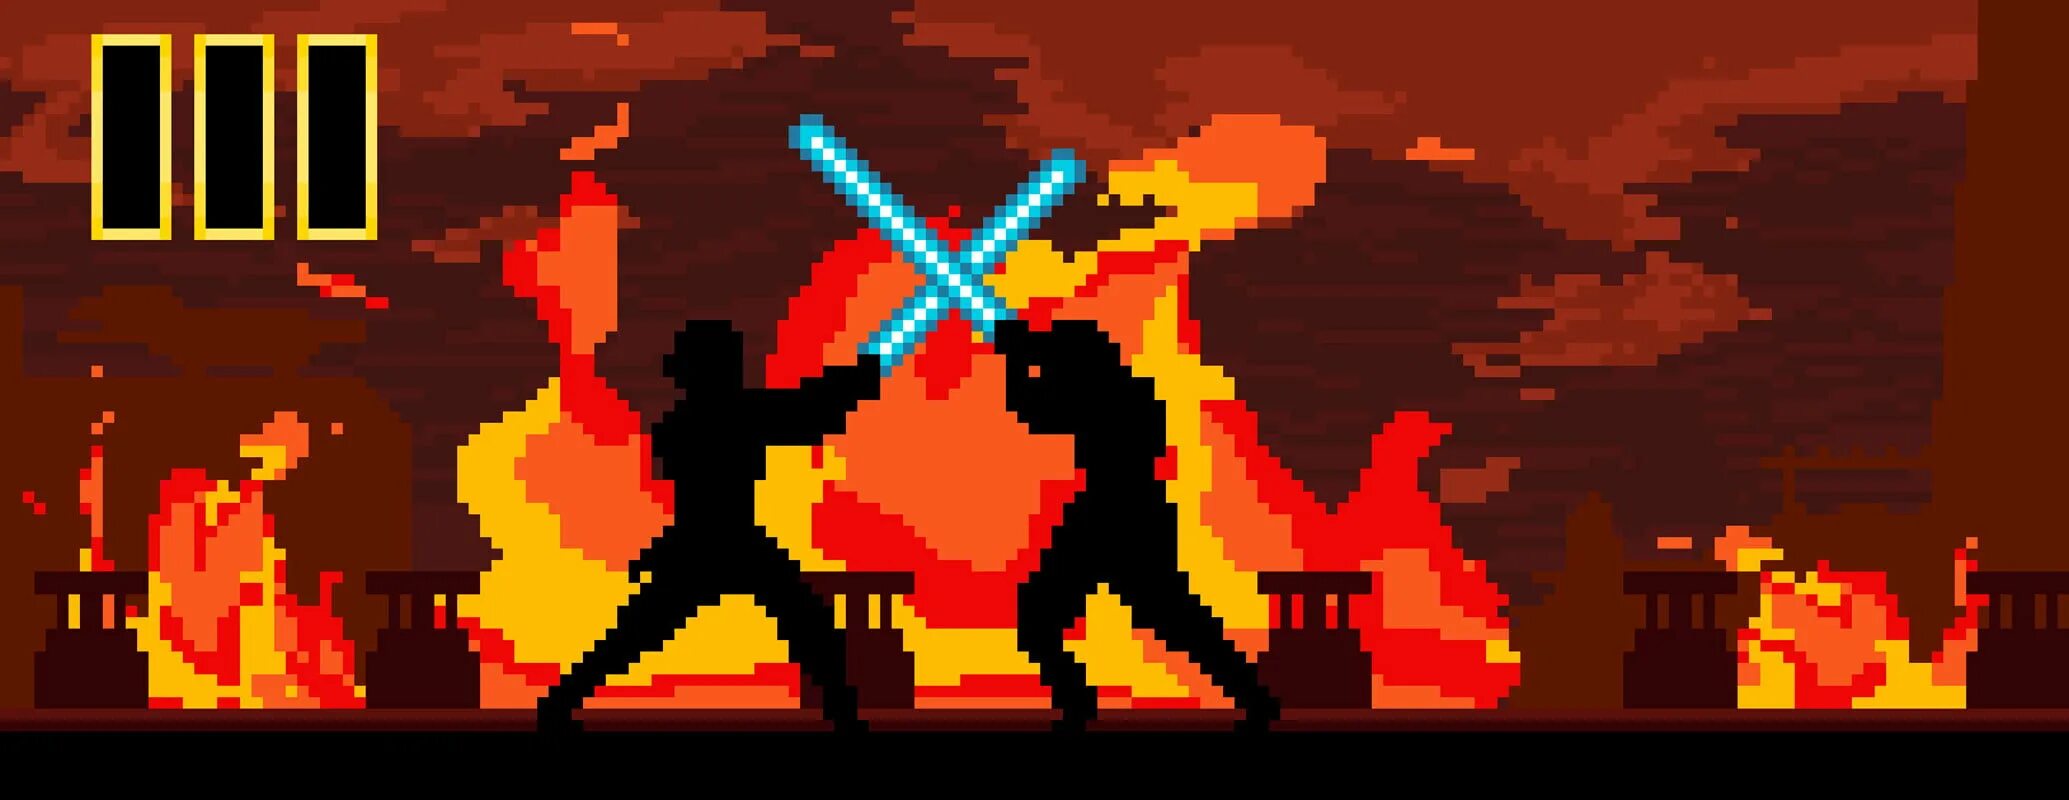 Пиксельный воин. Пиксель арт воин. Star Wars пиксели. Gangs wars pixel